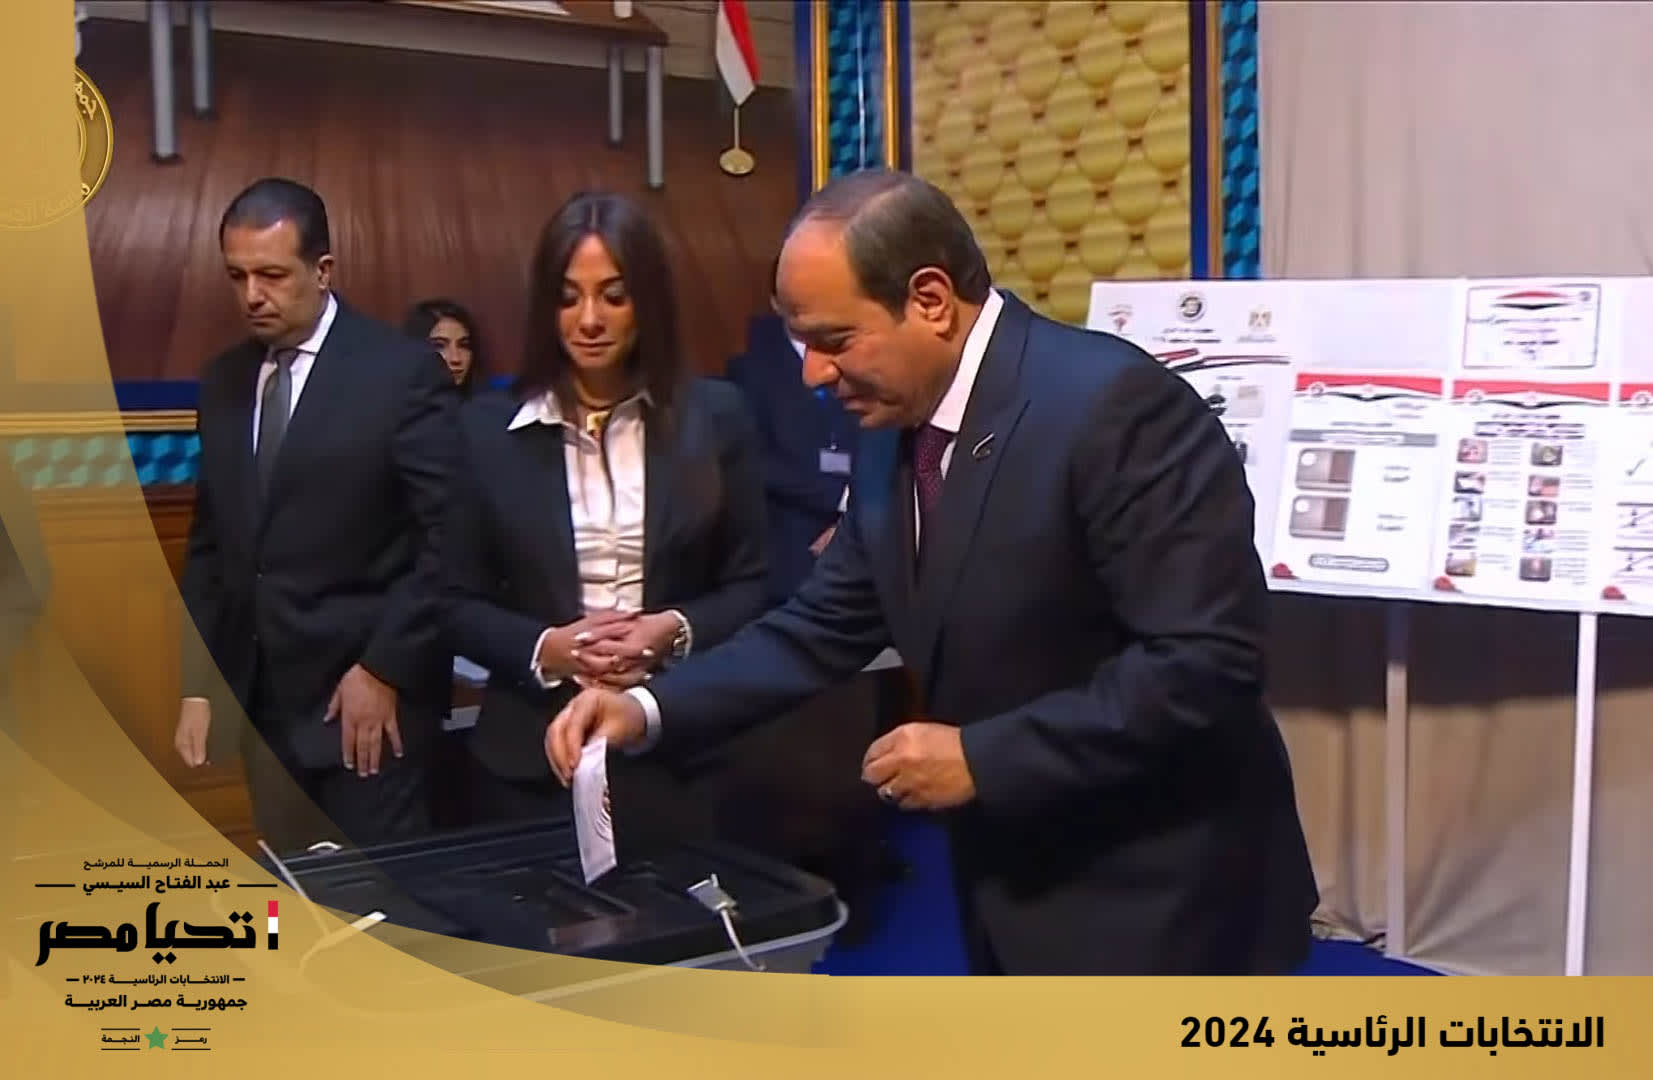 الرئيس المصري عبدالفتاح السيسي يدلي بصوته في الانتخابات الرئاسية، بالقاهرة الأحد، 10 ديسمبر/ كانون الأول 2023.